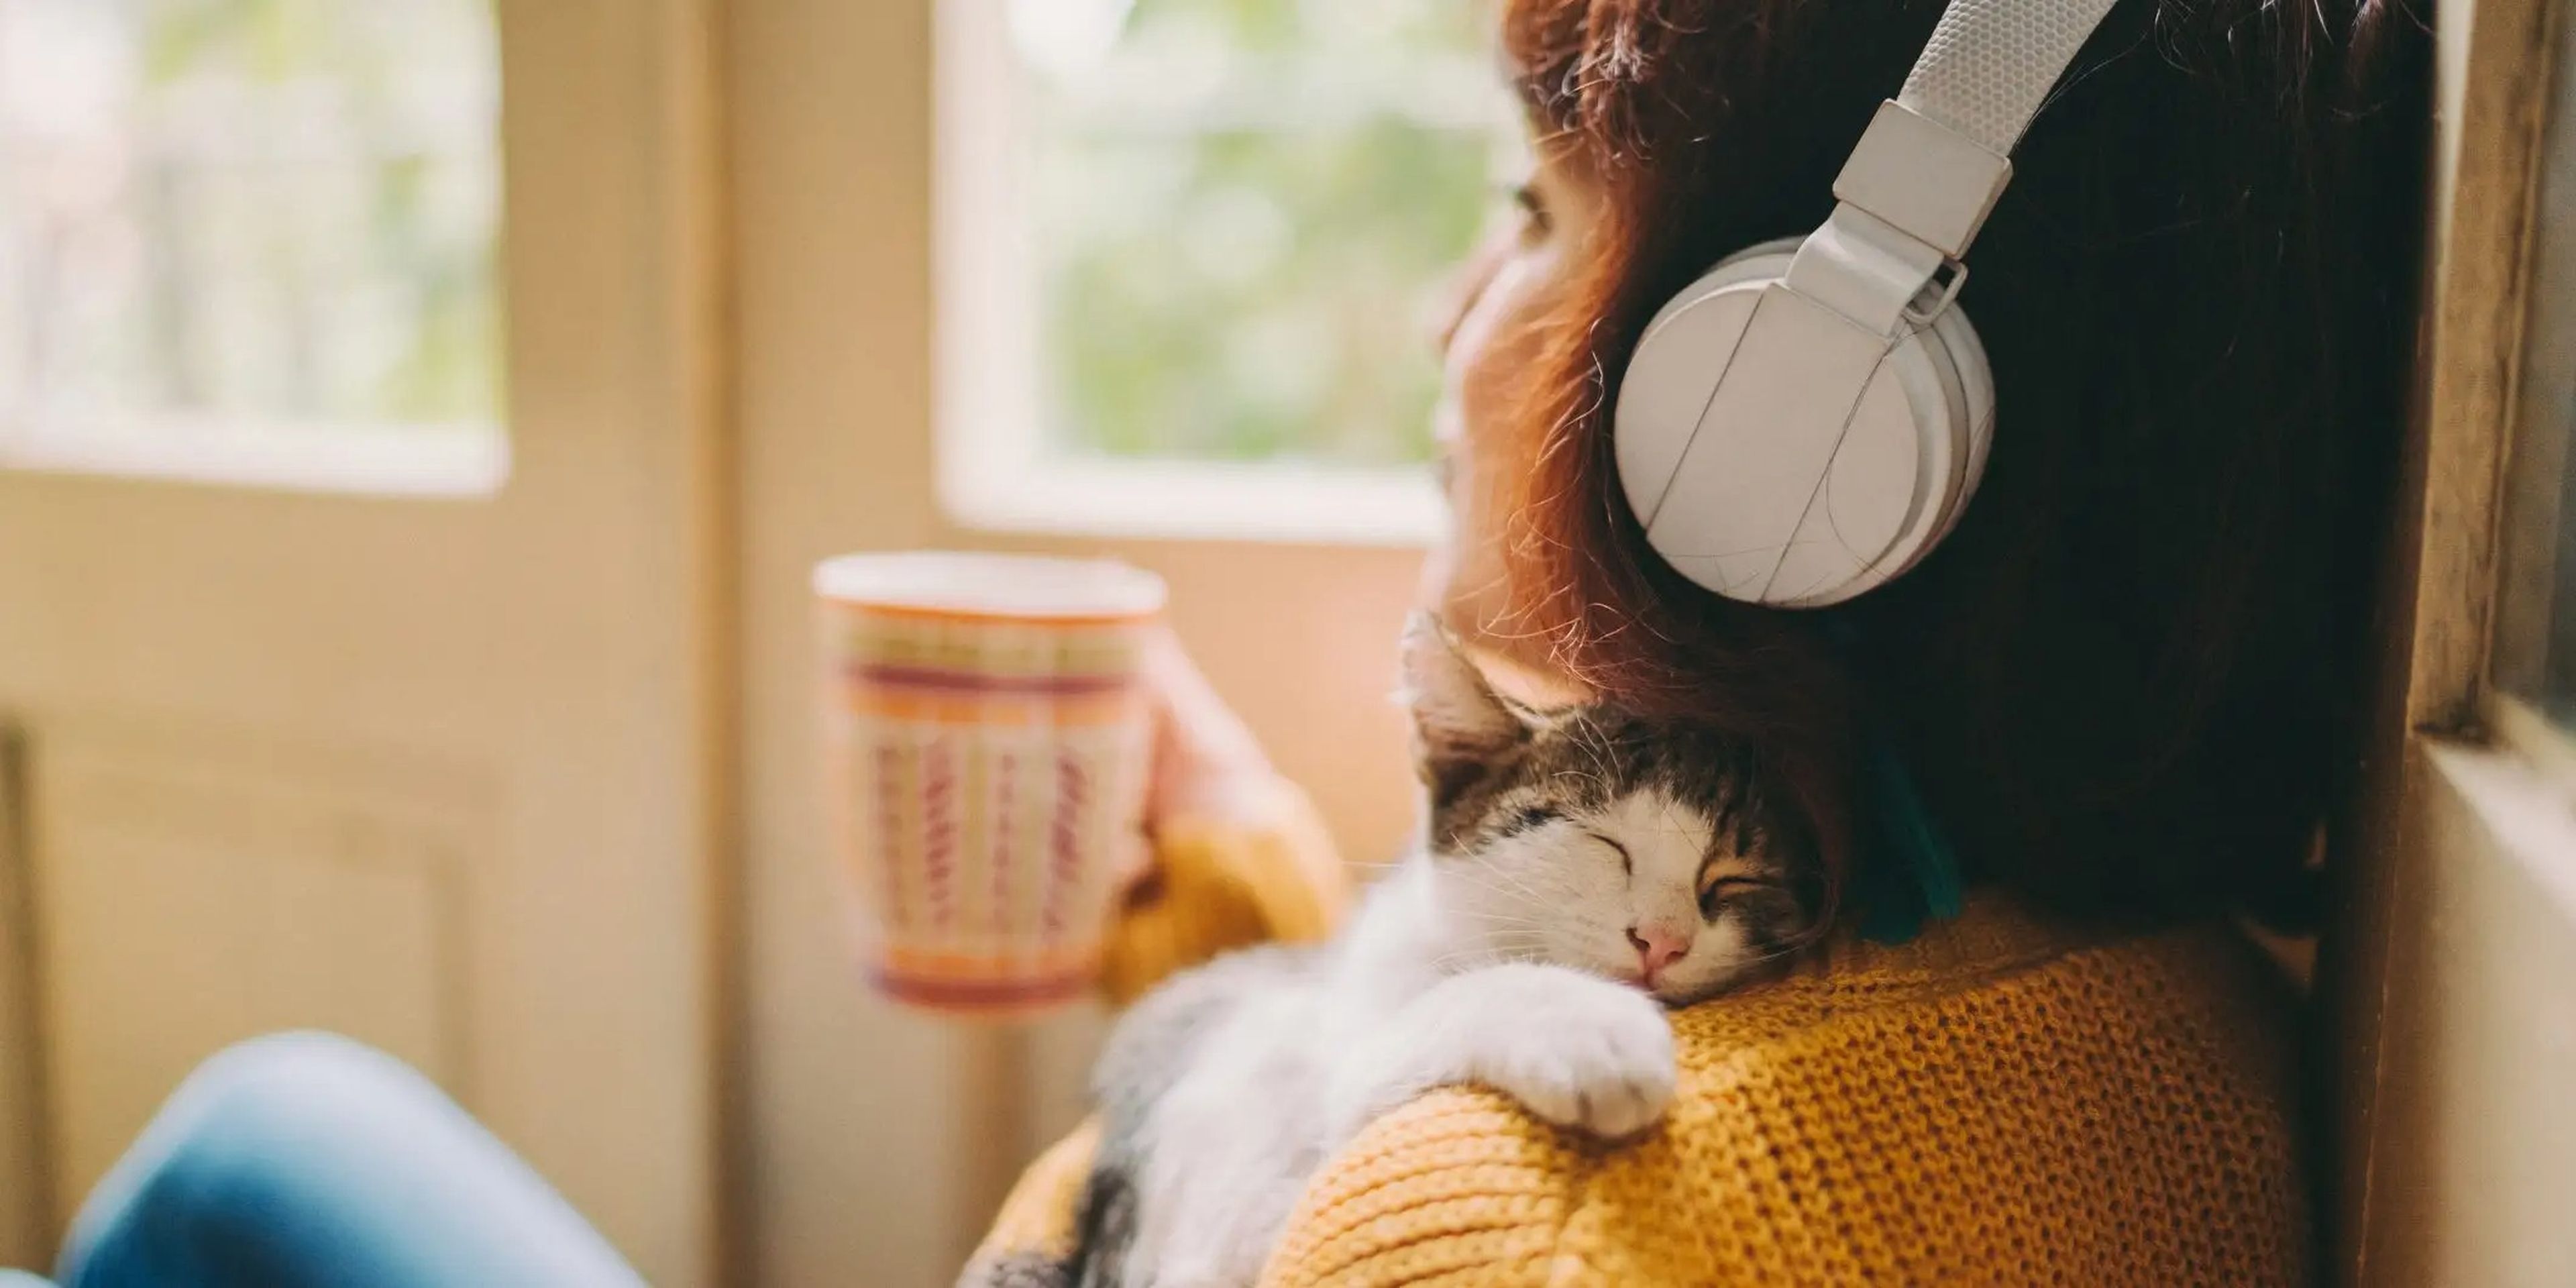 Acurrucarse con una mascota, escuchar música o tomar una bebida caliente puede ayudar a levantar el ánimo cuando no se quiere hacer nada.